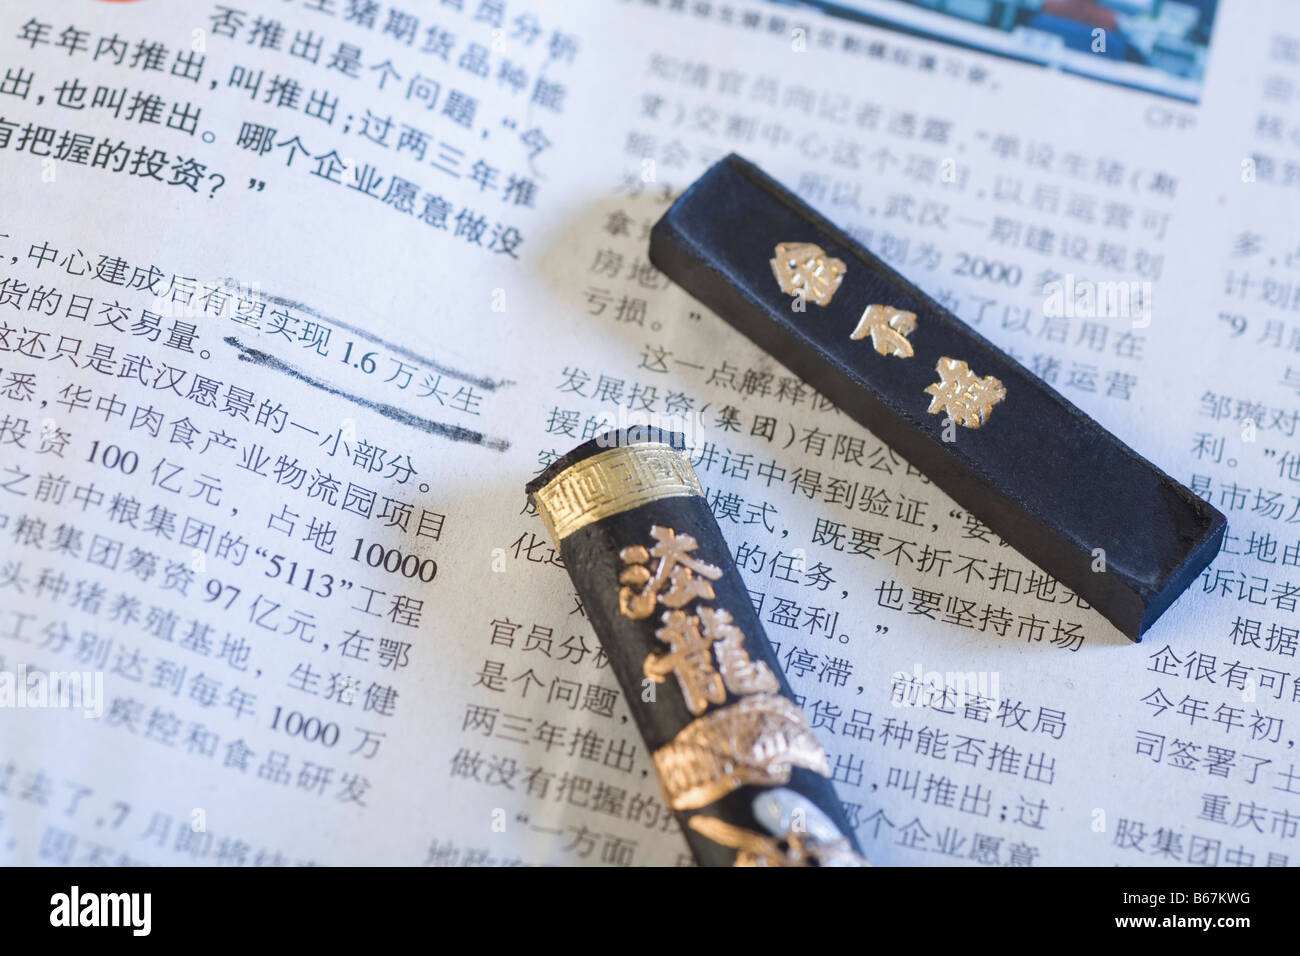 Nahaufnahme des chinesischen Finanzzeitung mit chinesischen Bleistift Stockfoto